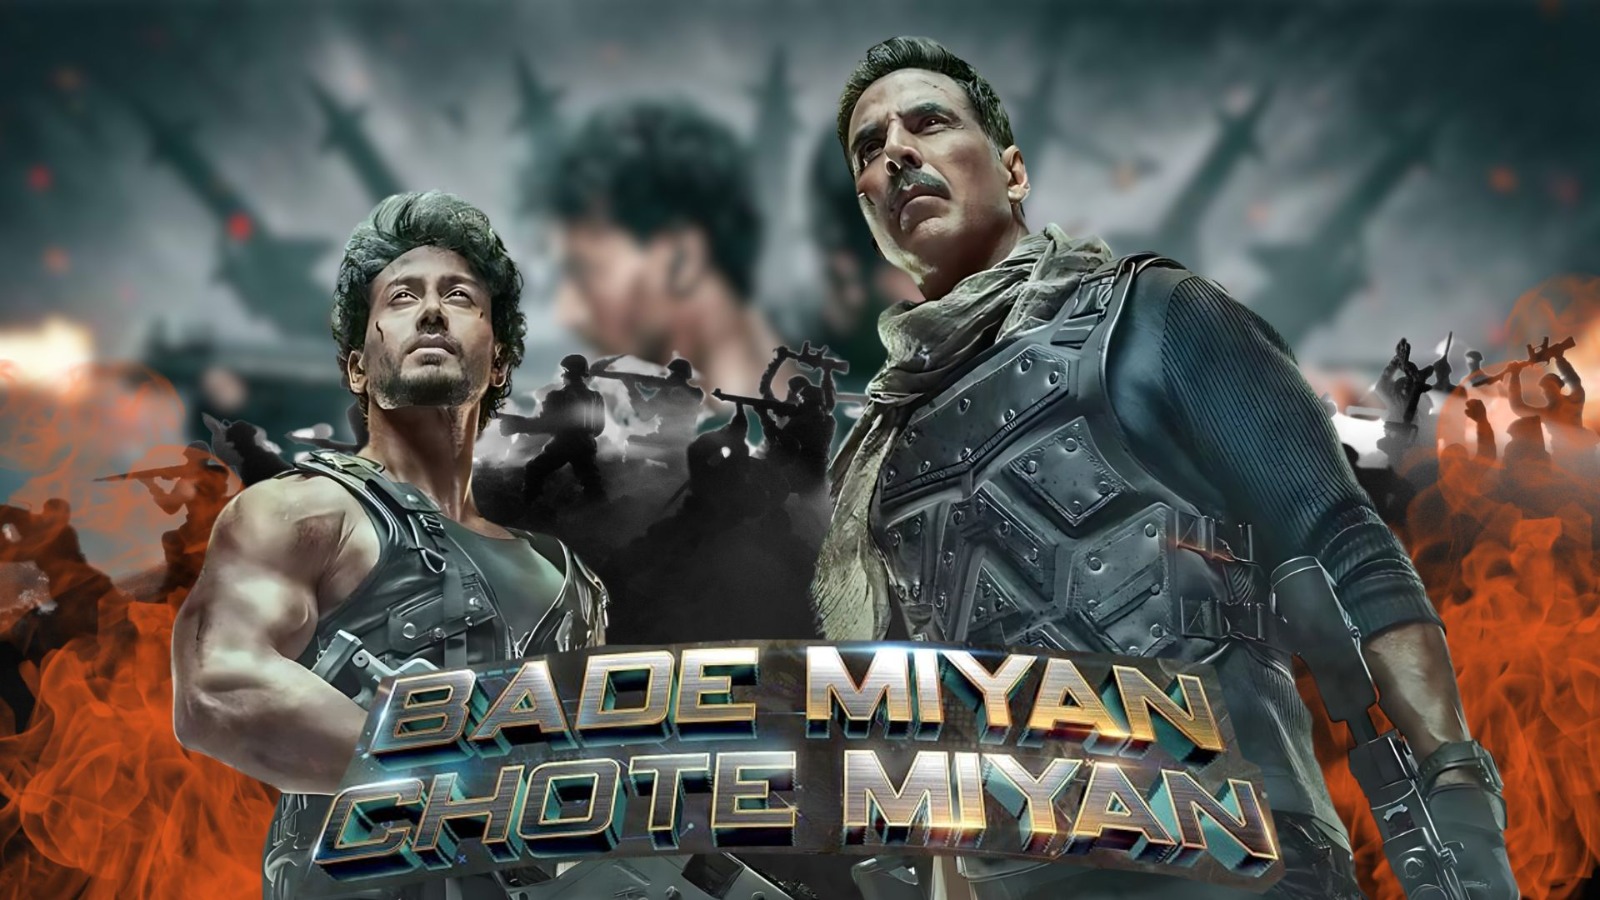 Why Did Akshay Kumar-Tiger Shroff’s ‘Bade Miyan Chote Miyan’ Bomb at the Box Office? | Exclusive